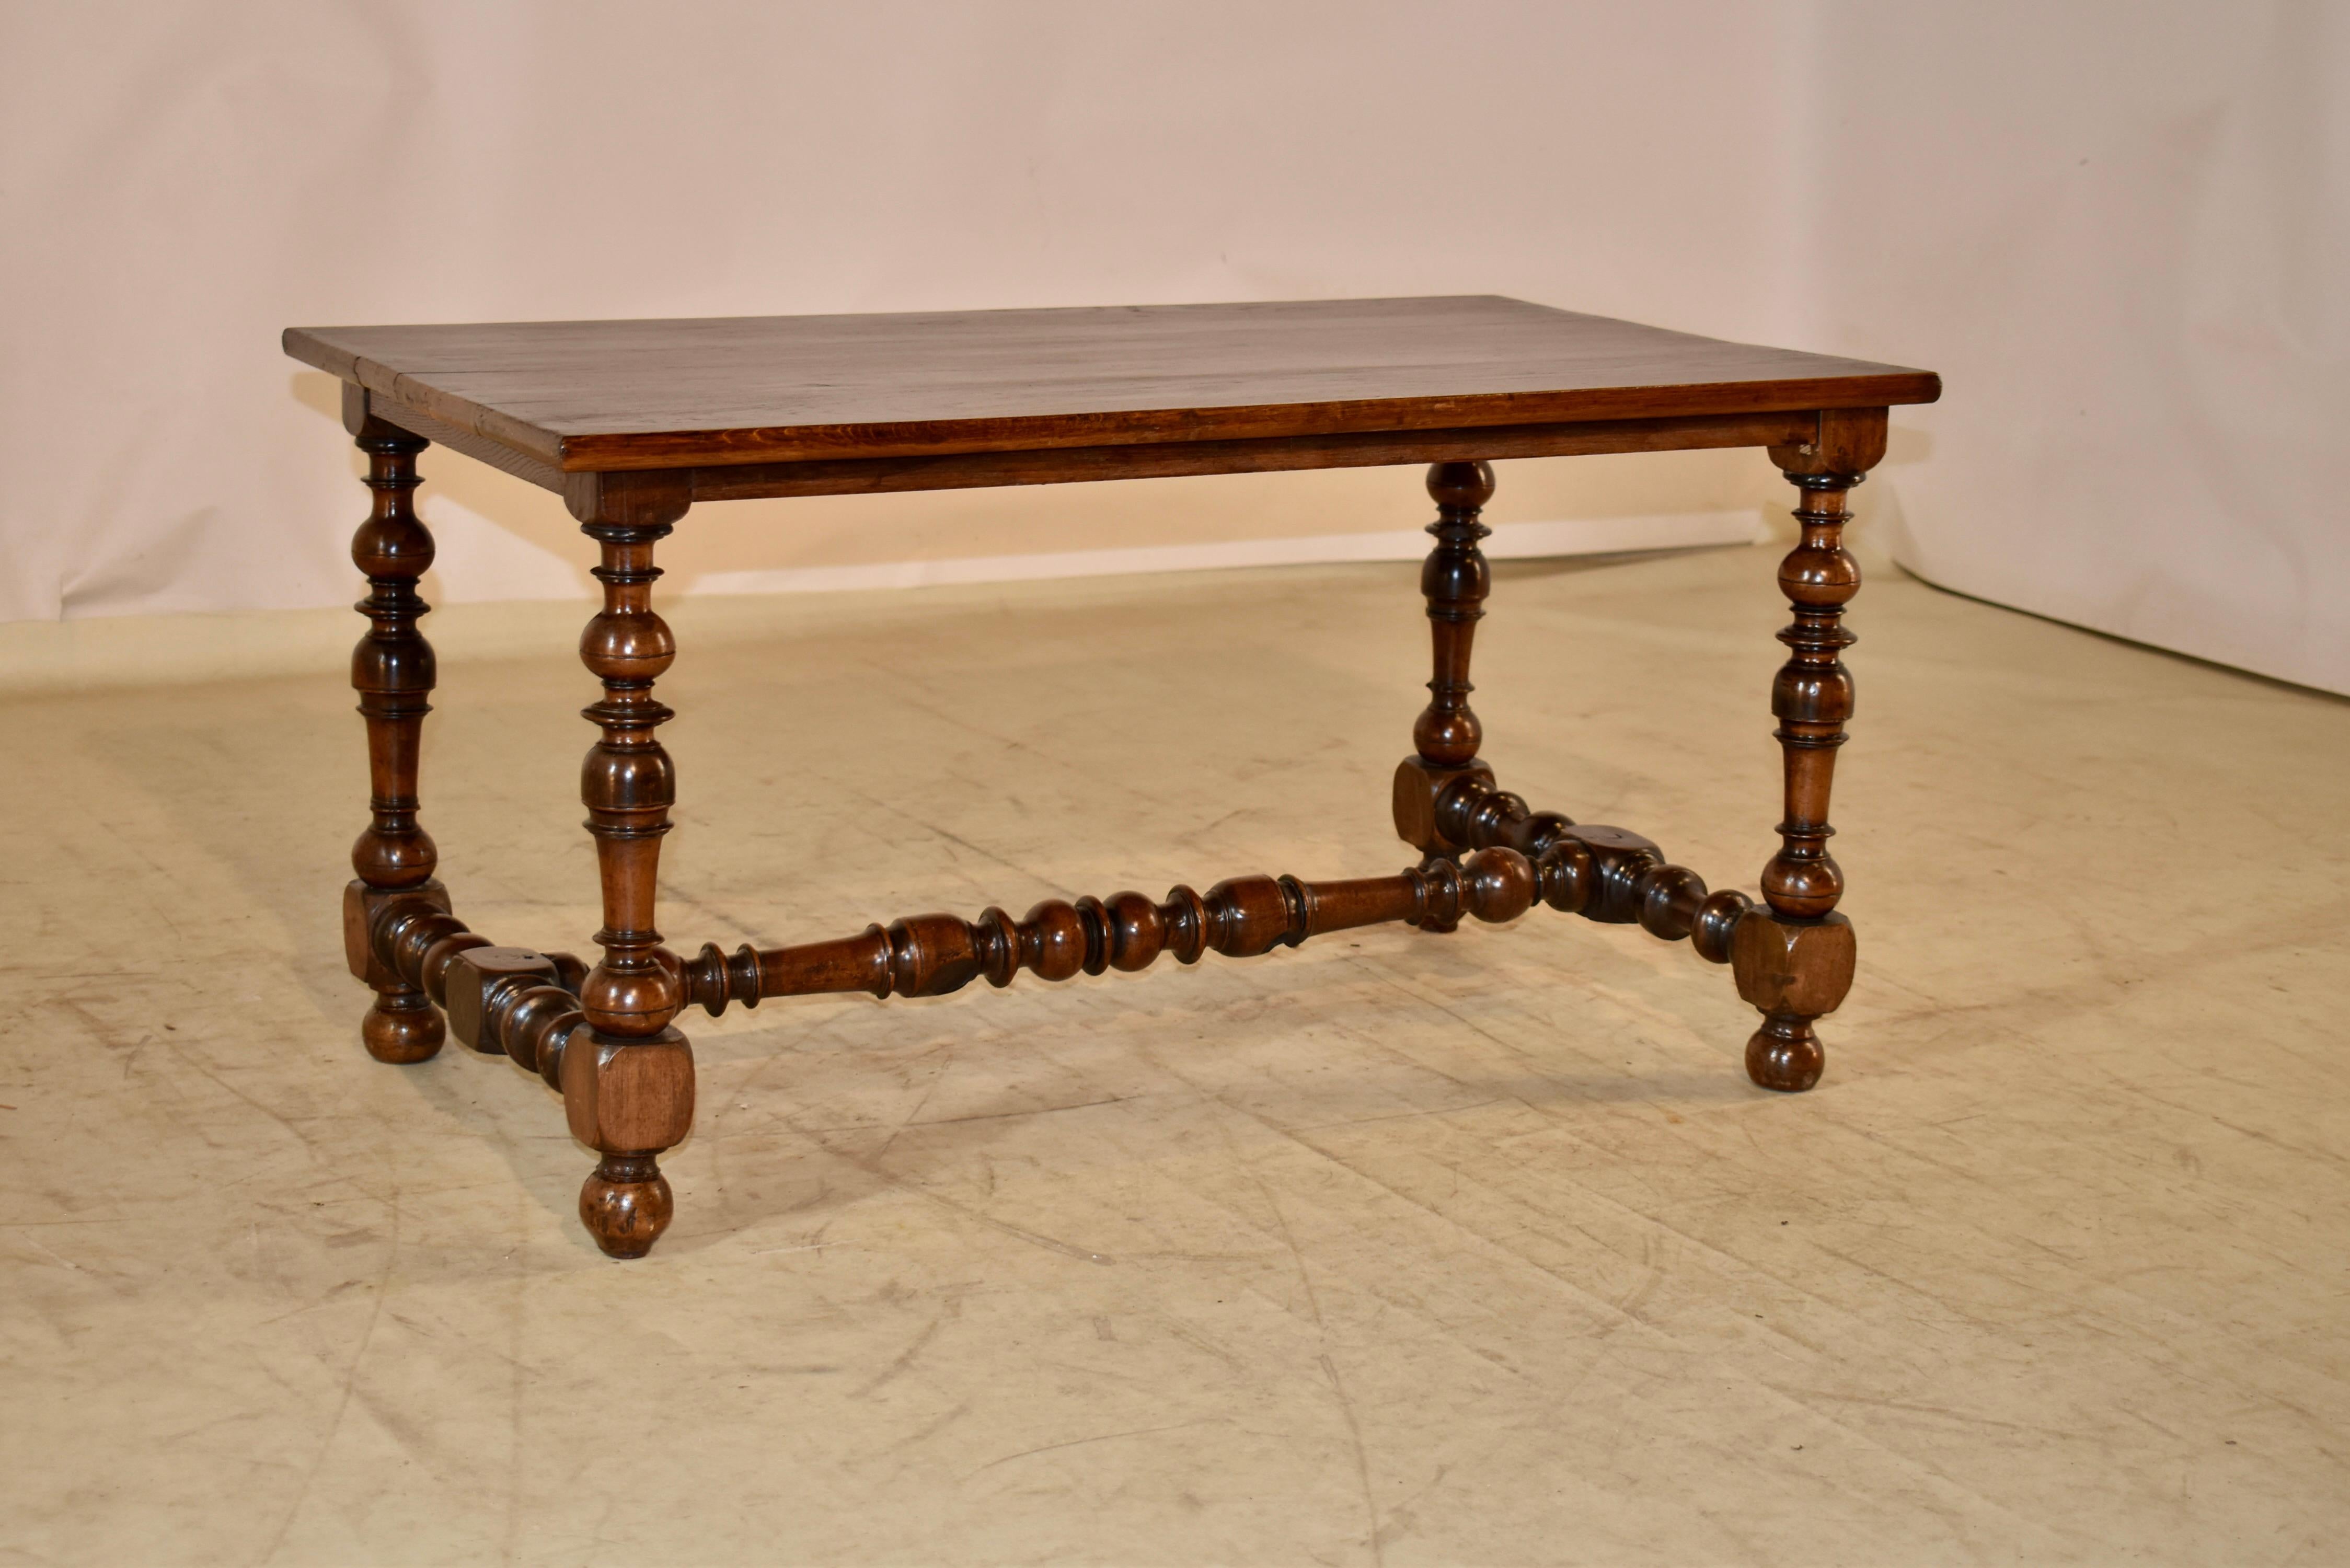 Il s'agit d'une très belle table basse. La base est d'époque Louis XV qui date d'environ 1750-1770, et est en noyer. La partie supérieure, en chêne, a été ajoutée plus tard, mais très probablement au cours du XIXe siècle. Le plateau présente un joli